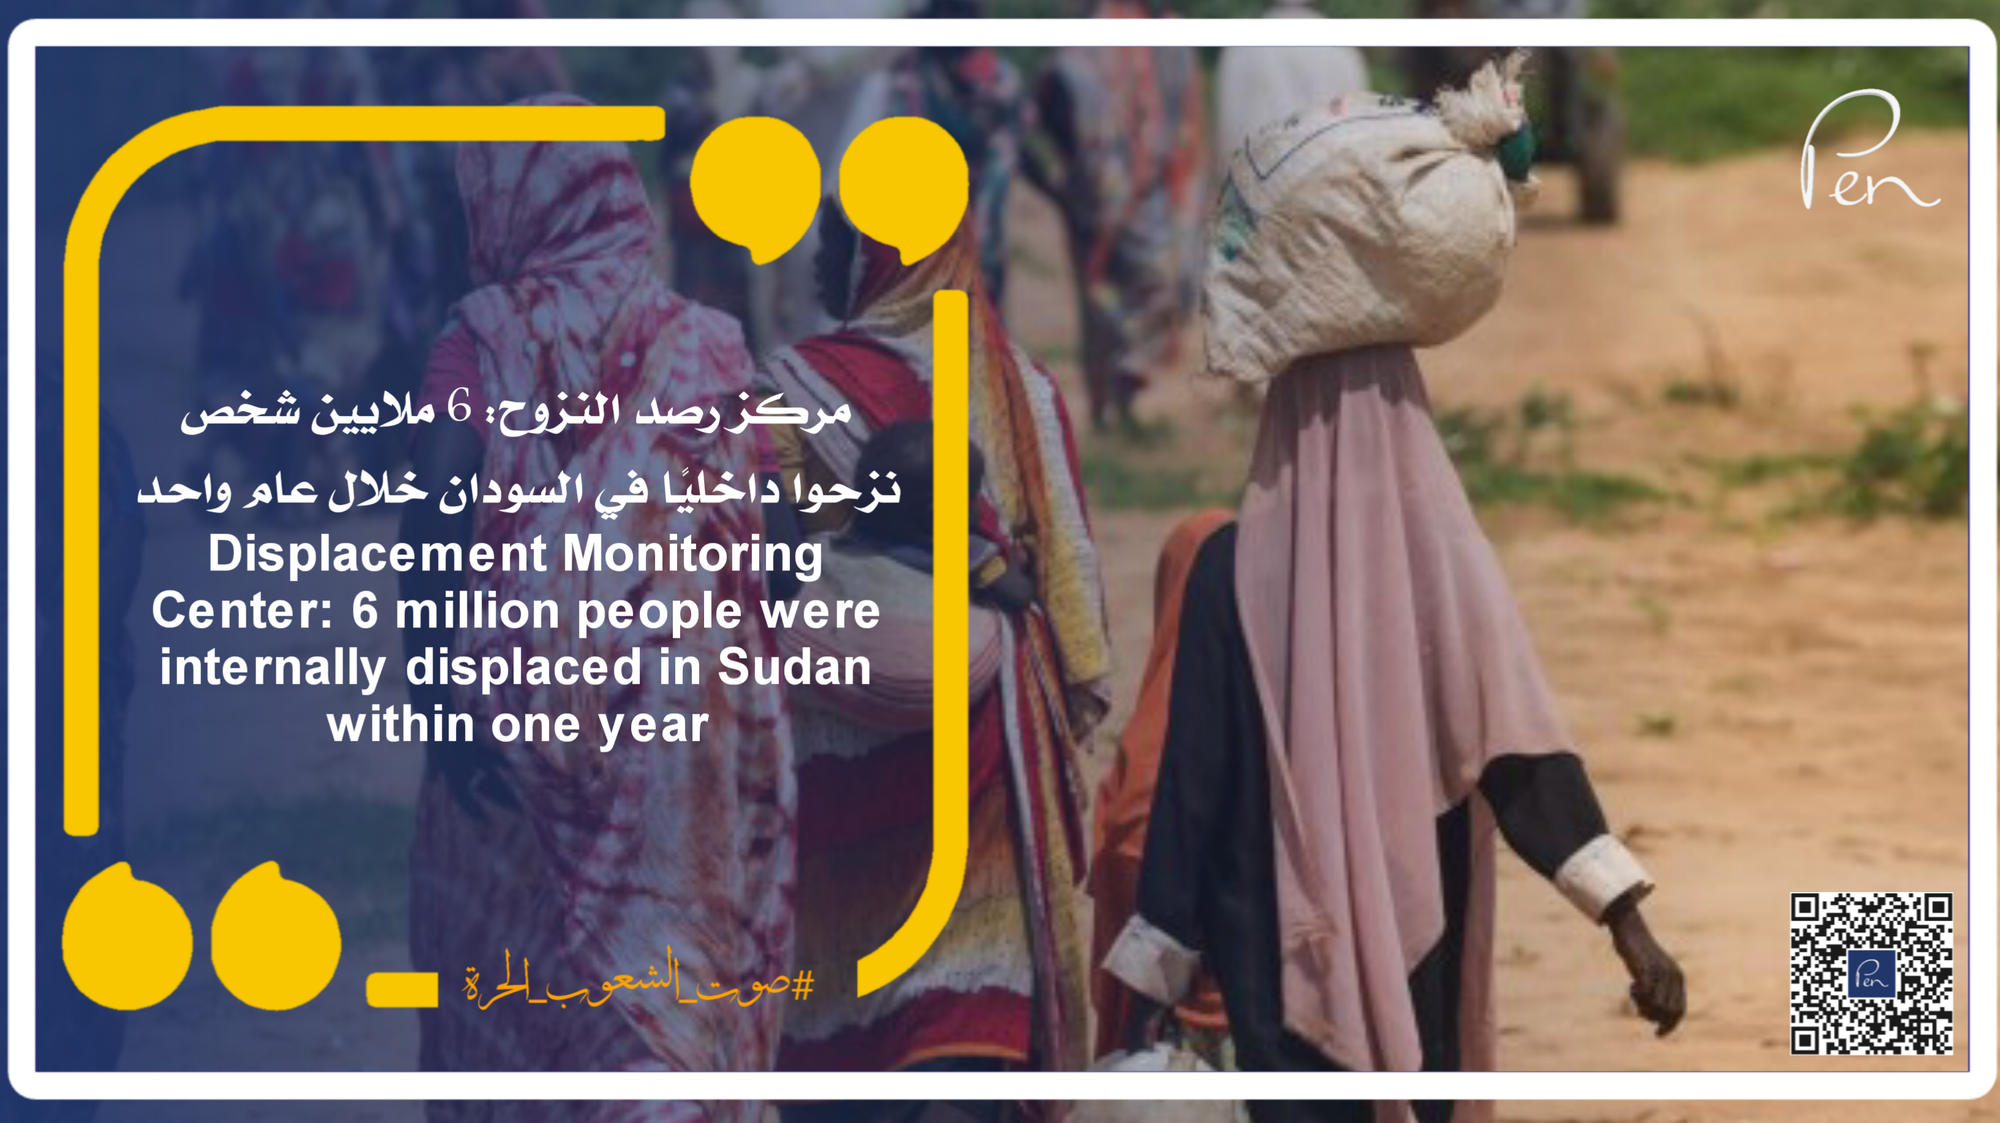 مركز رصد النزوح: 6 ملايين شخص نزحوا داخليًا في السودان خلال عام واحد